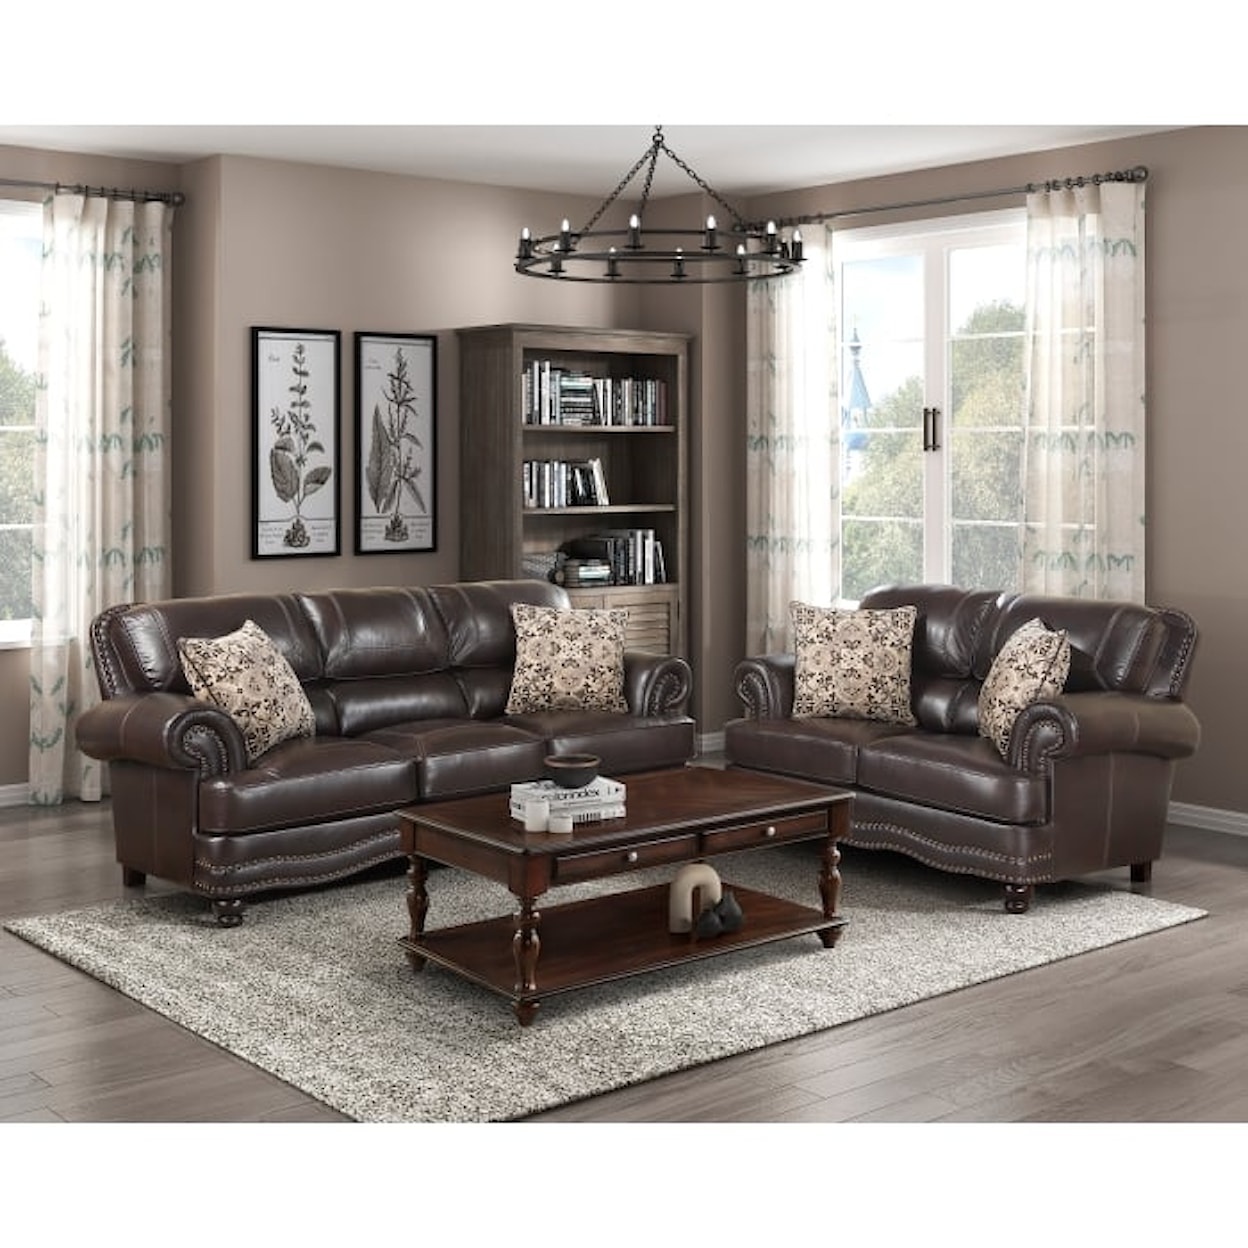 Homelegance Furniture Milford 2-Piece Living Room Set